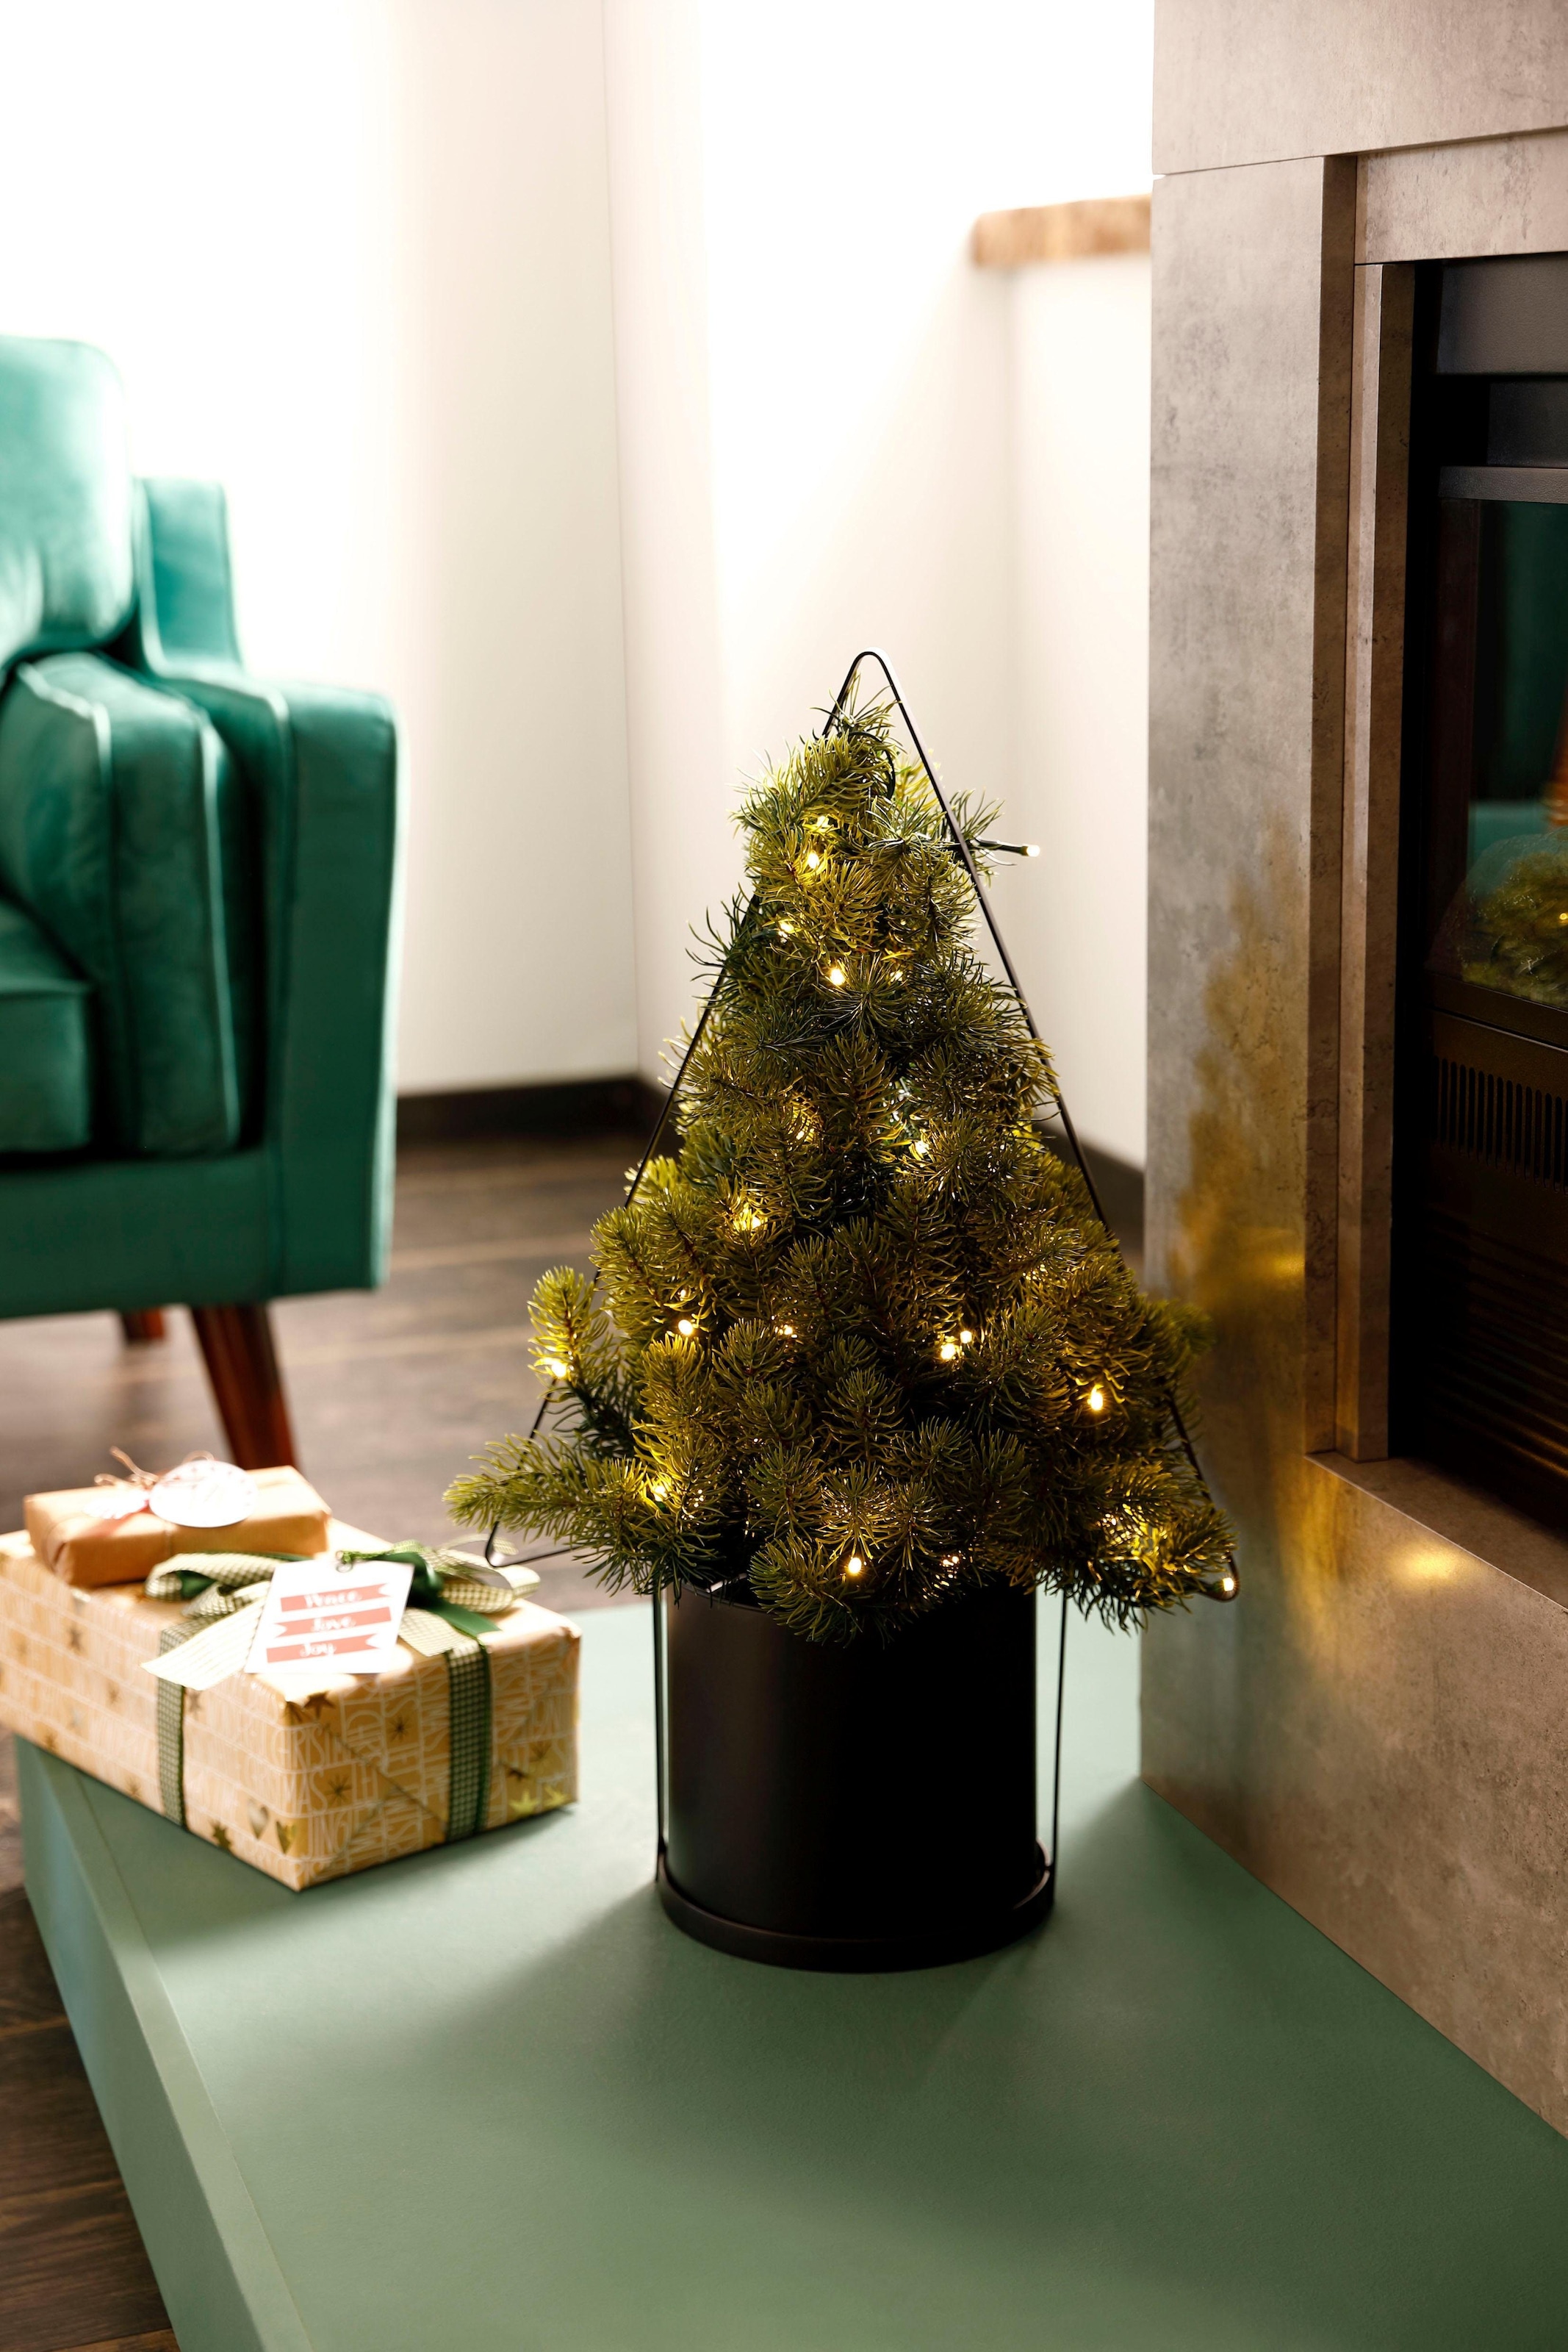 Creativ deco Künstlicher Weihnachtsbaum »Weihnachtsdeko aussen, künstlicher  Christbaum, Tannenbaum«, mit schwarzem Kunststoff-Topf jetzt kaufen